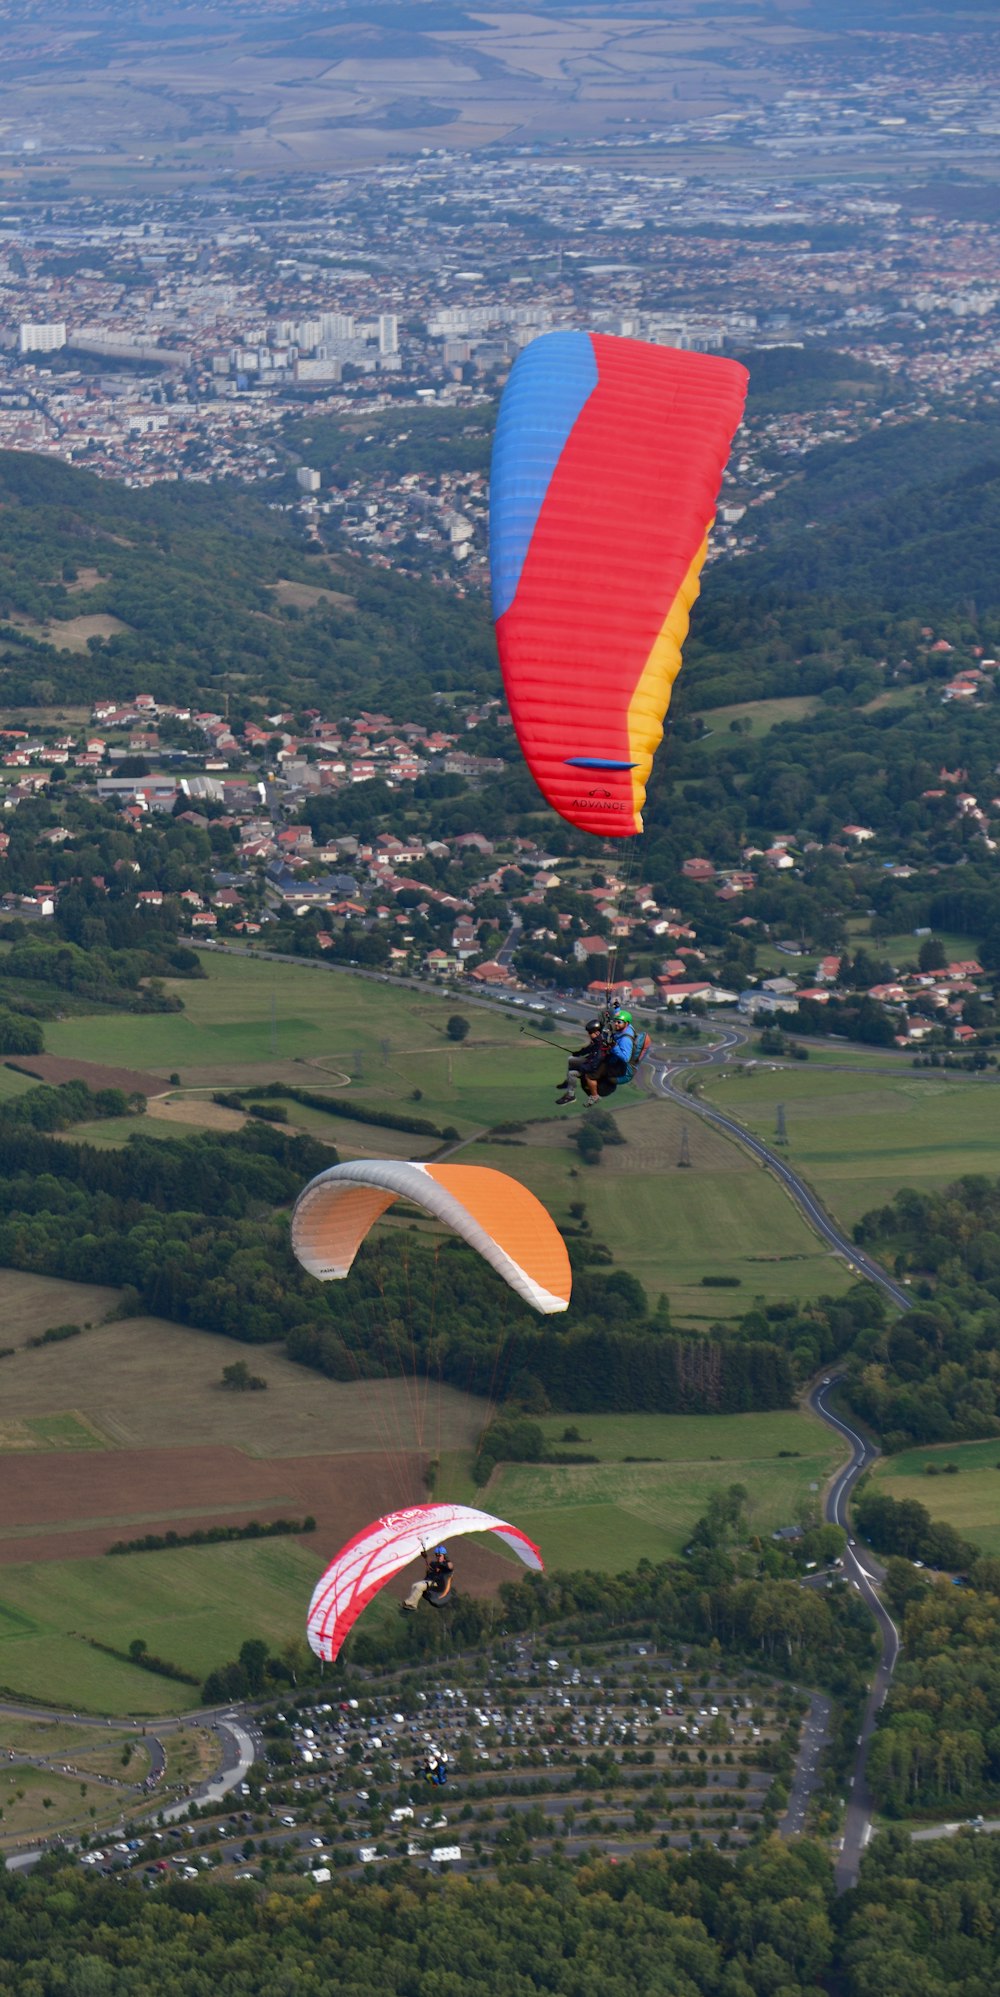 Un groupe de personnes parachute ascensionnel au-dessus d’une campagne verdoyante